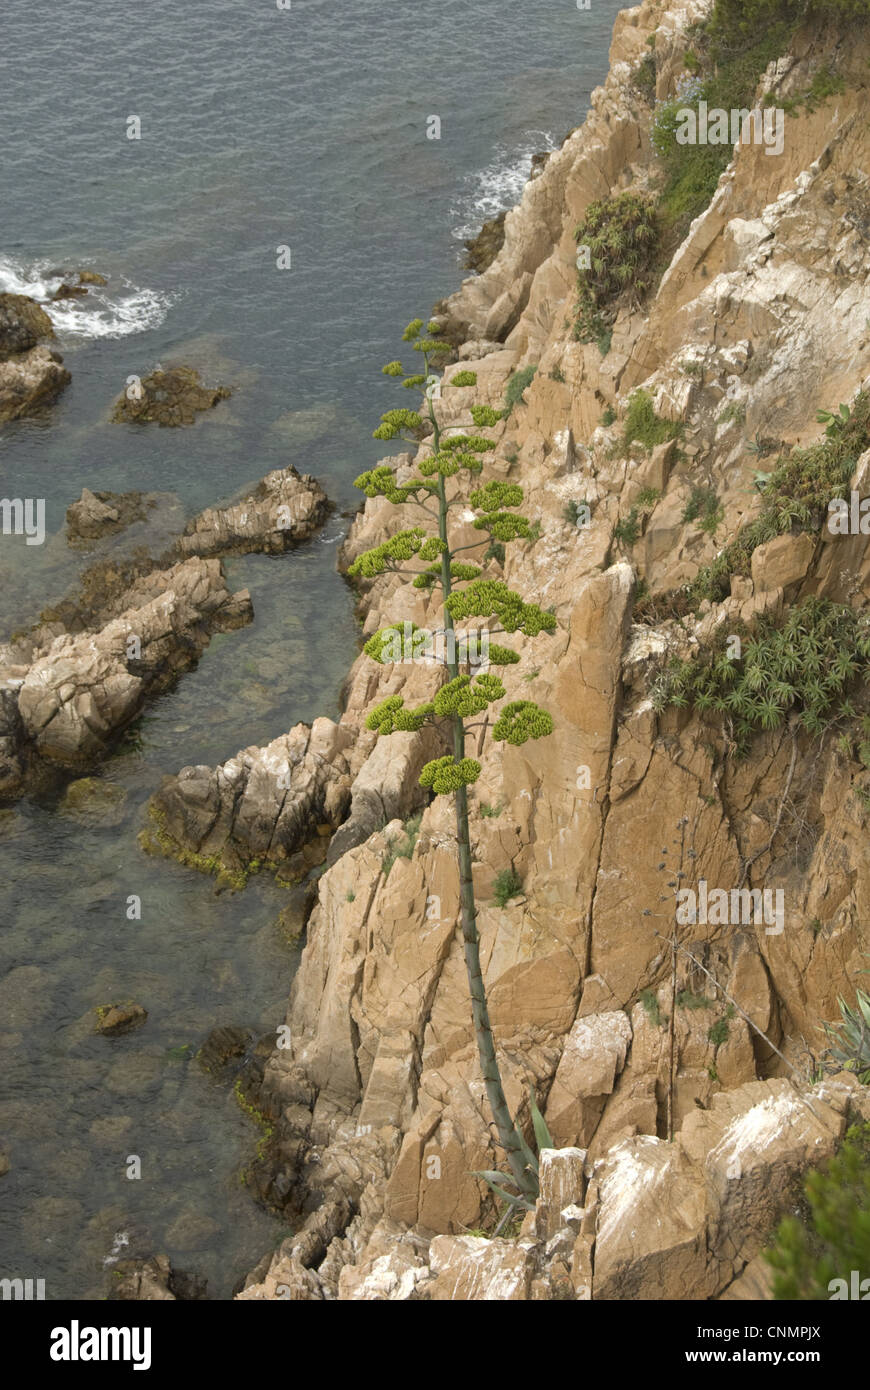 Impianto di secolo Agave americana specie introdotte giardino escapee crescente sulla scogliera costiera Blanes Costa Brava Catalogna Spagna luglio Foto Stock